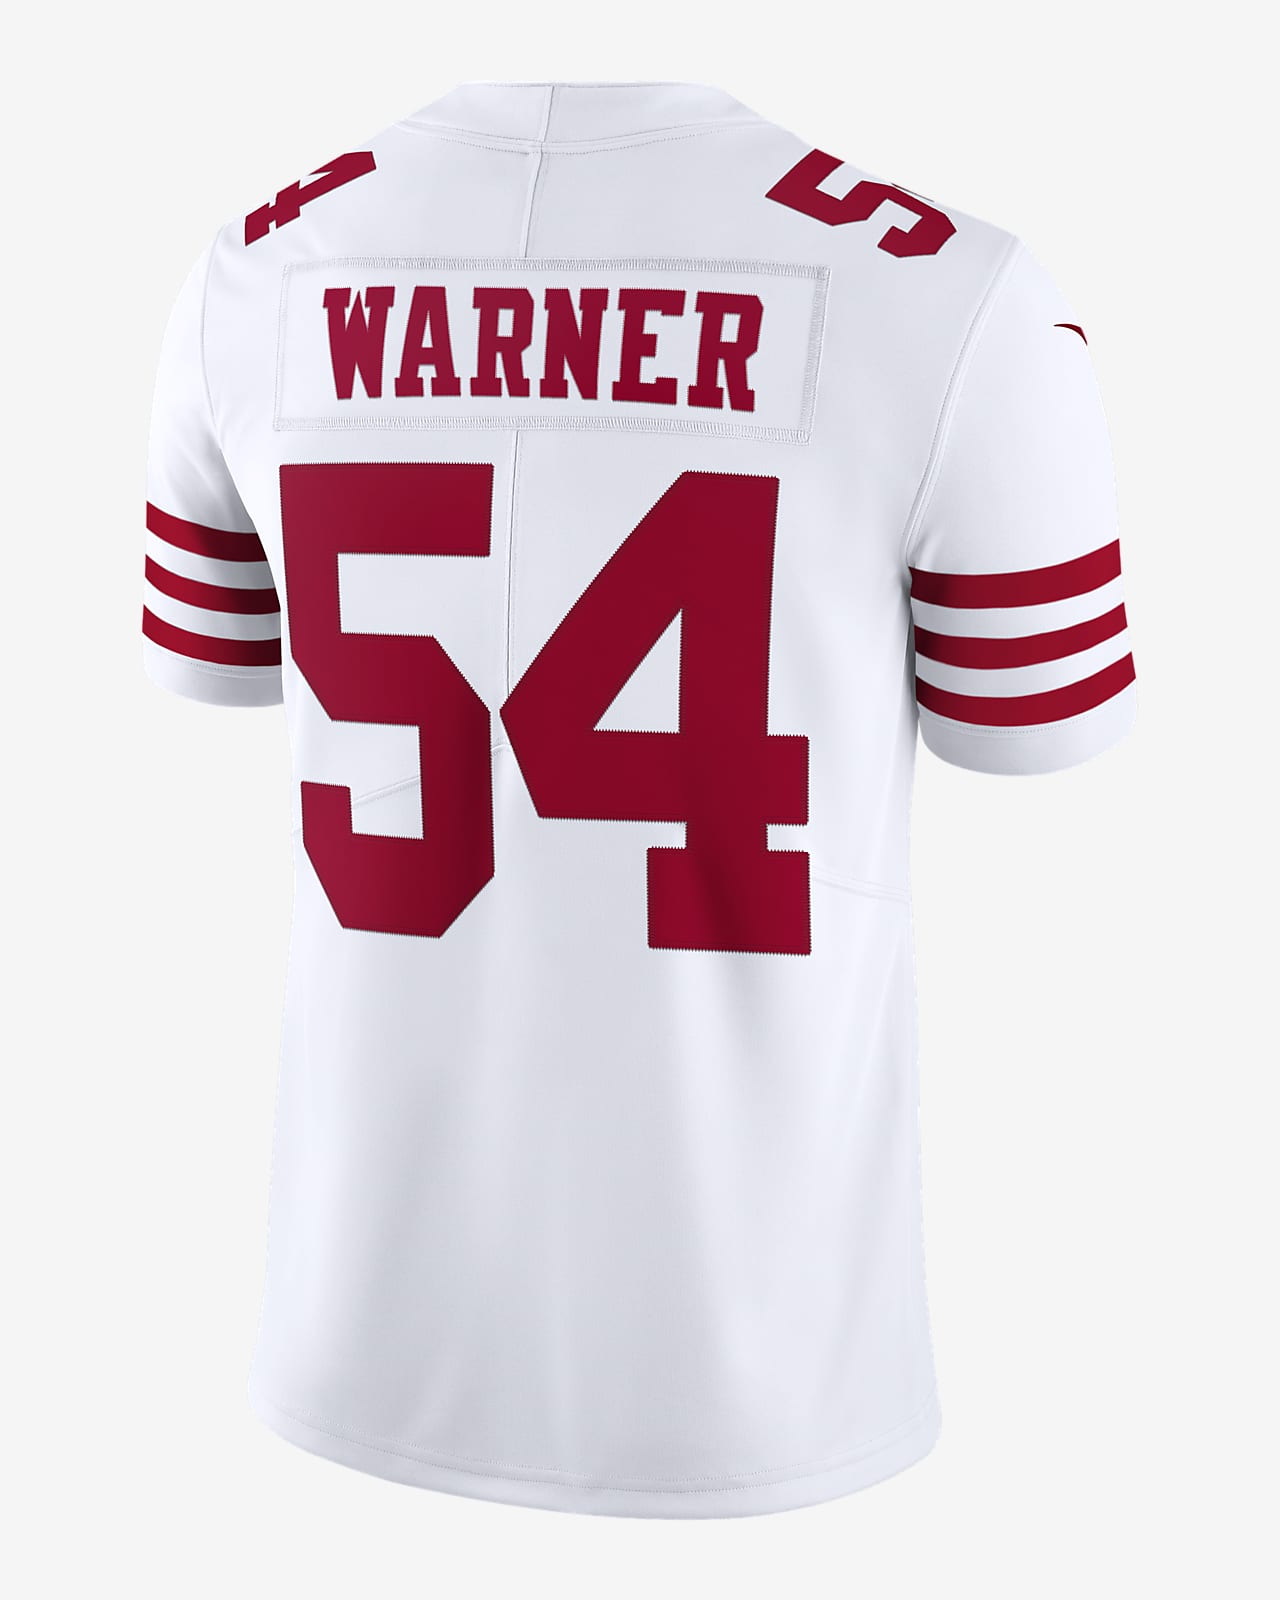 لعبة دومينو اون لاين NFL San Francisco 49ers Nike Vapor Untouchable (Fred Warner) Men's ... لعبة دومينو اون لاين